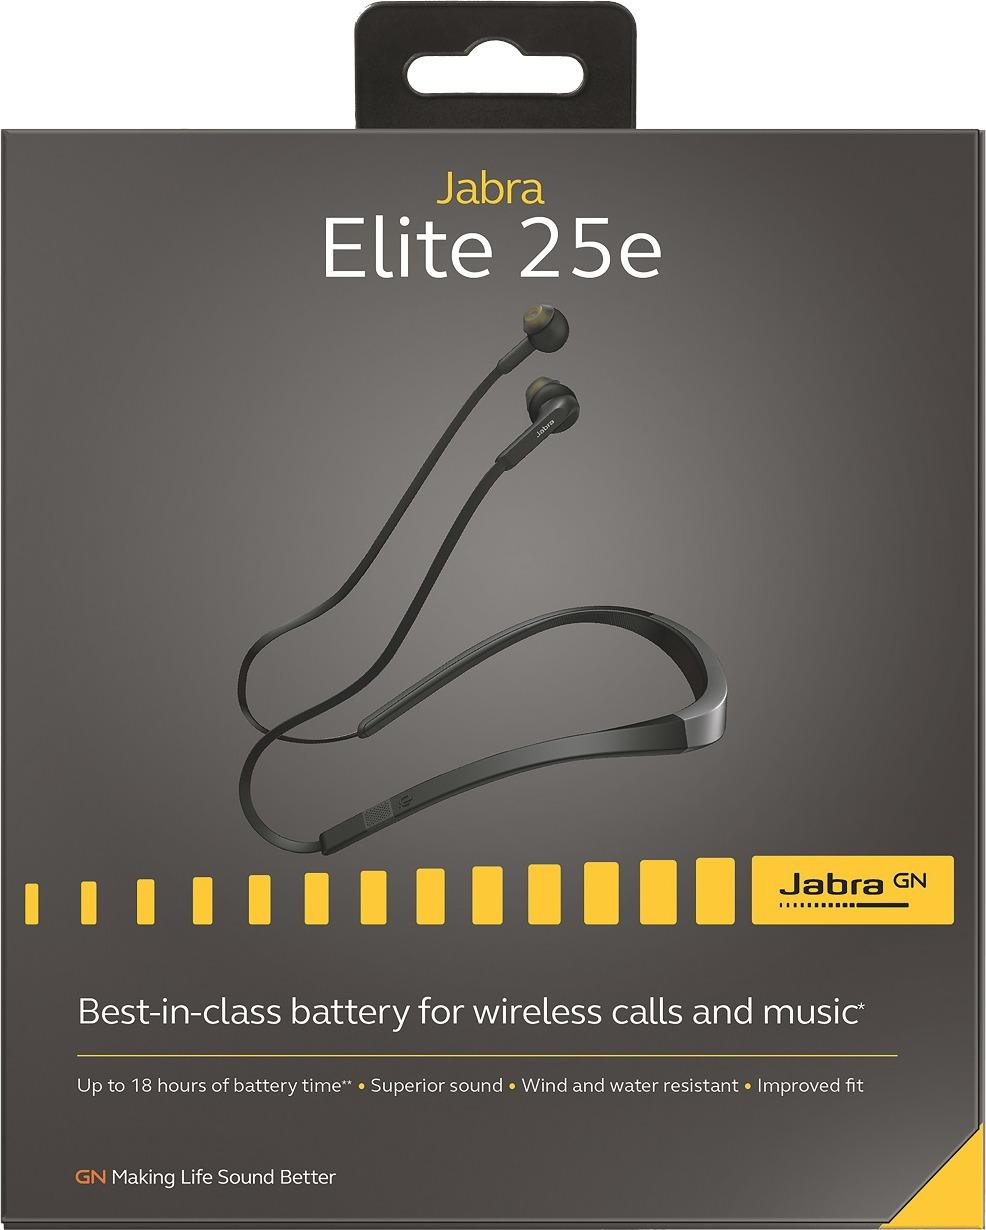 Emotie vasteland Voorzieningen Best Buy: Jabra Elite 25e Wireless In-Ear Headphones Silver 100-98400001-14